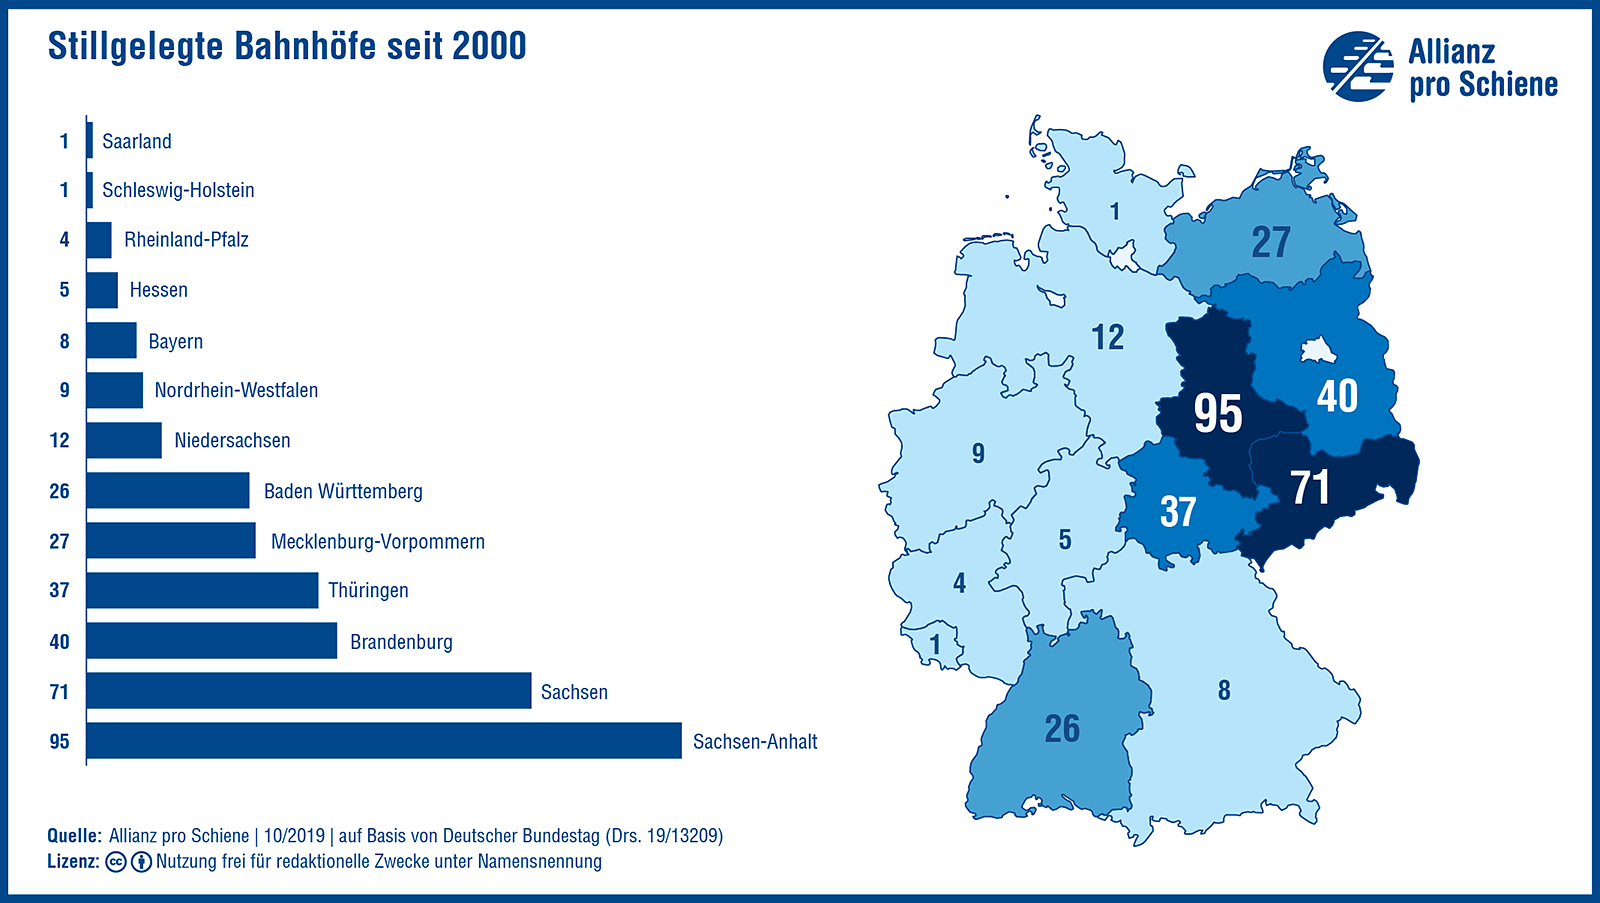 Stillgelegte Bahnhöfe in Deutschland seit 2000